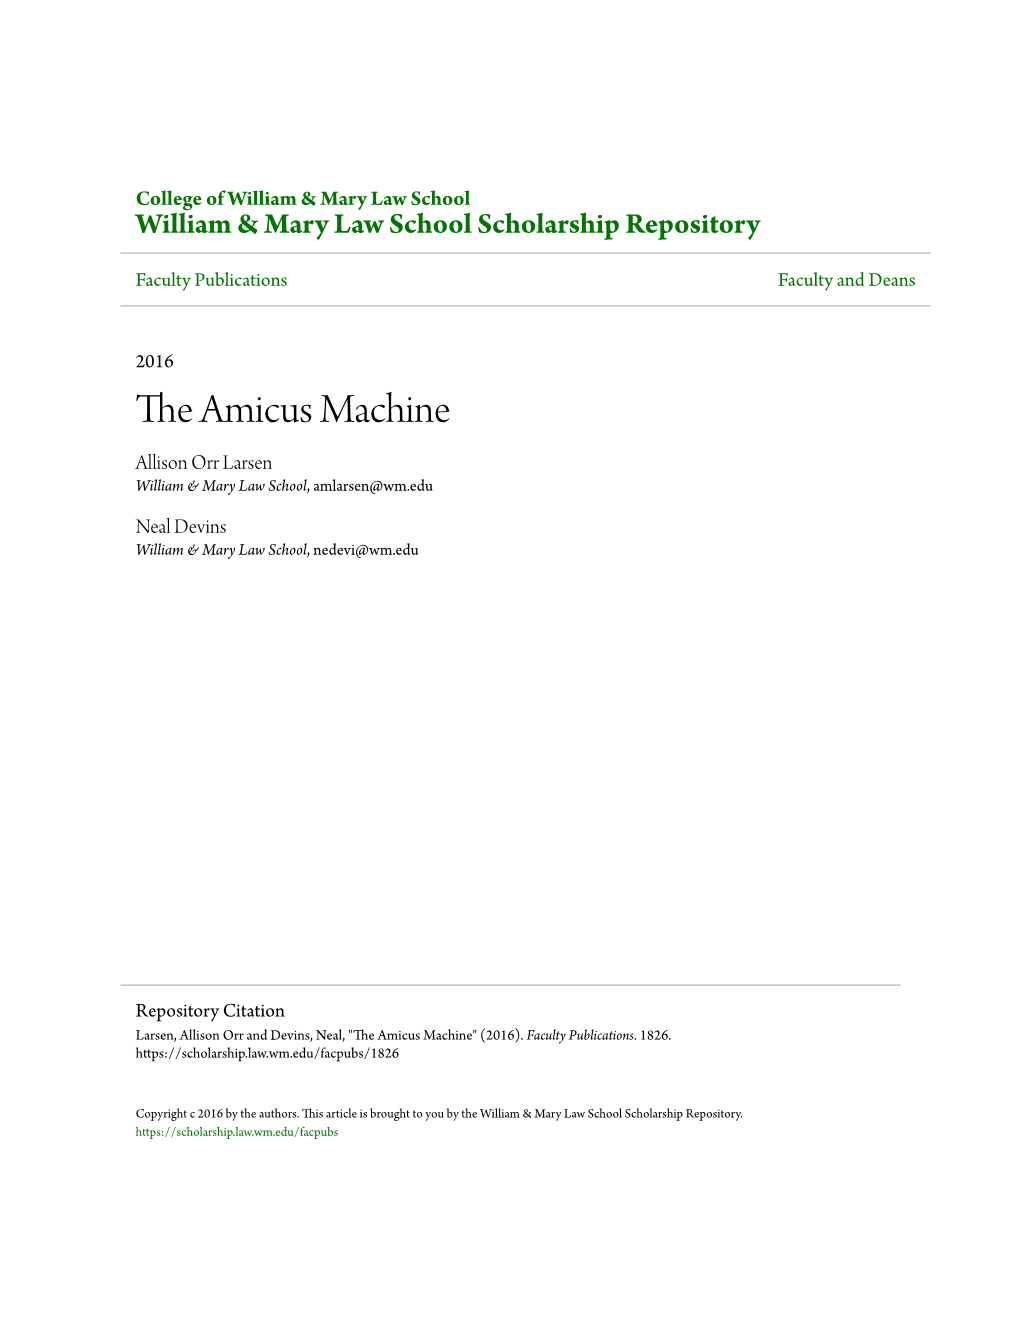 The Amicus Machine Allison Orr Larsen William & Mary Law School, Amlarsen@Wm.Edu